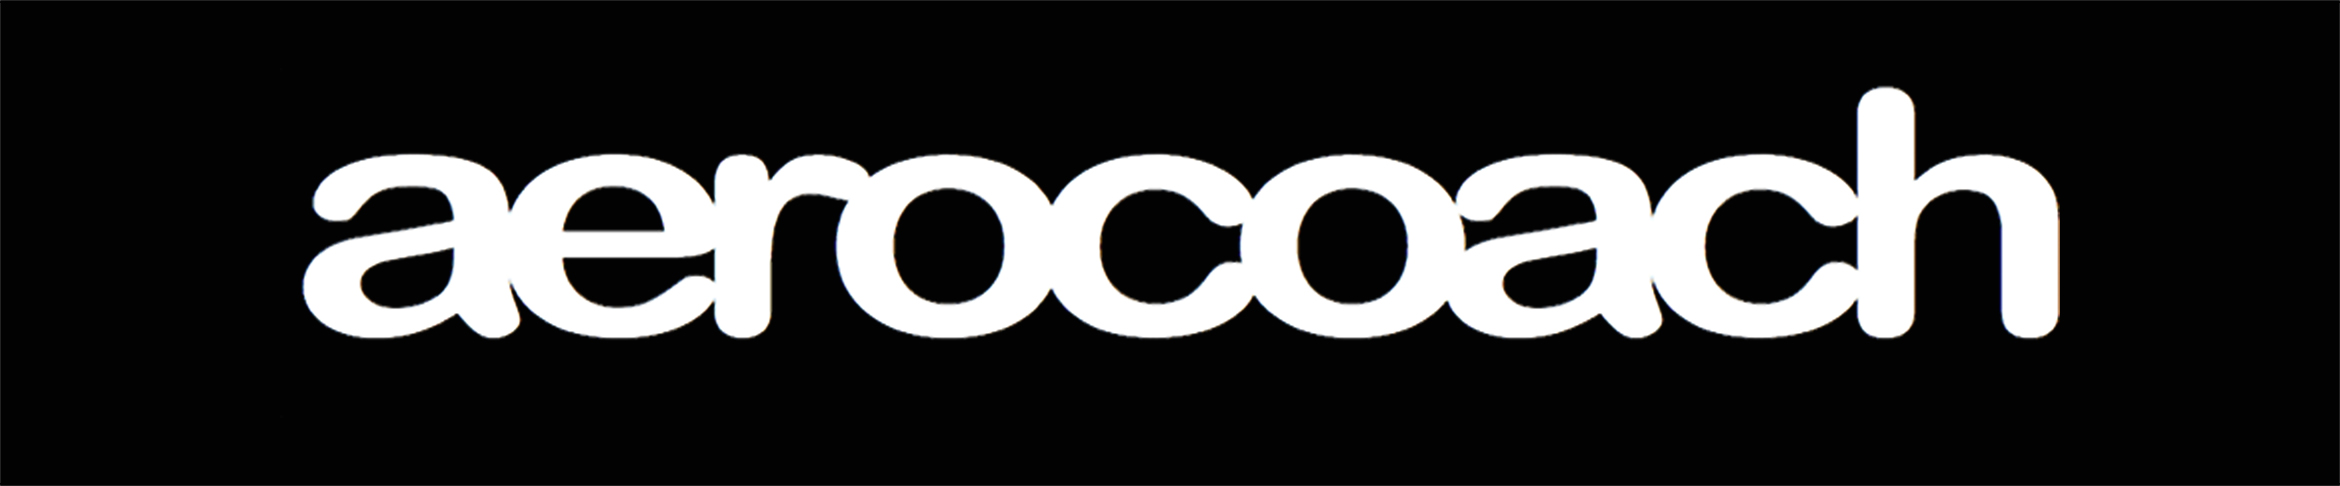 aerocoach_logo